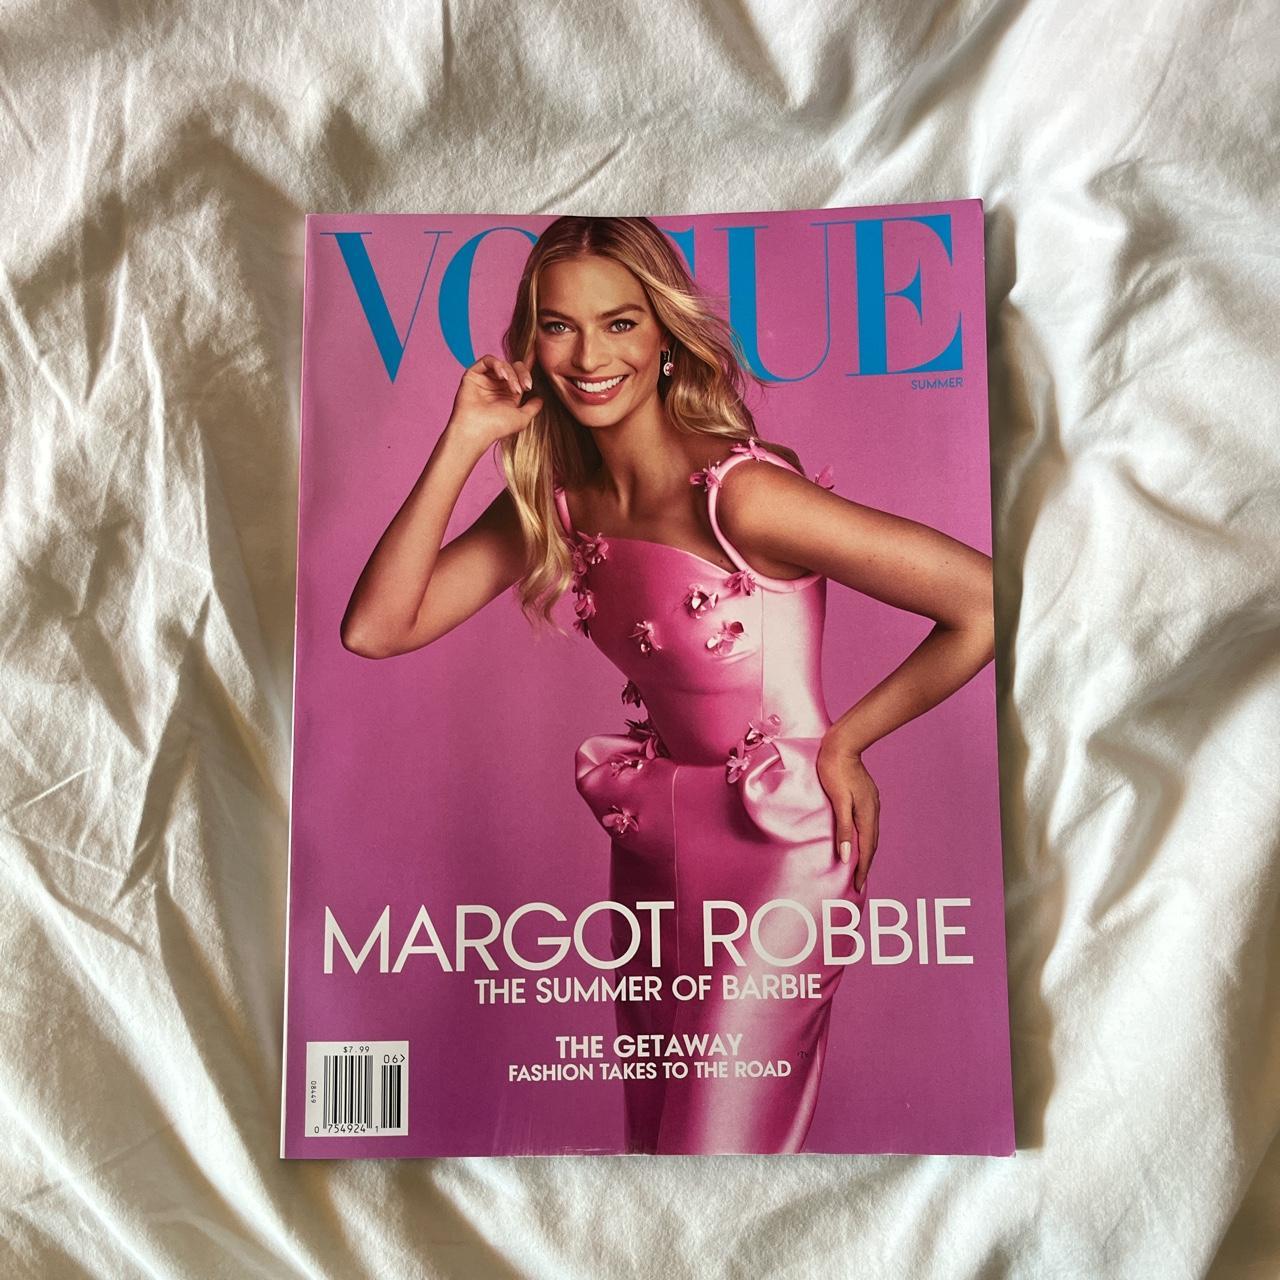 vogue summer issue featuring margot robbie 🎀 brand... - Depop